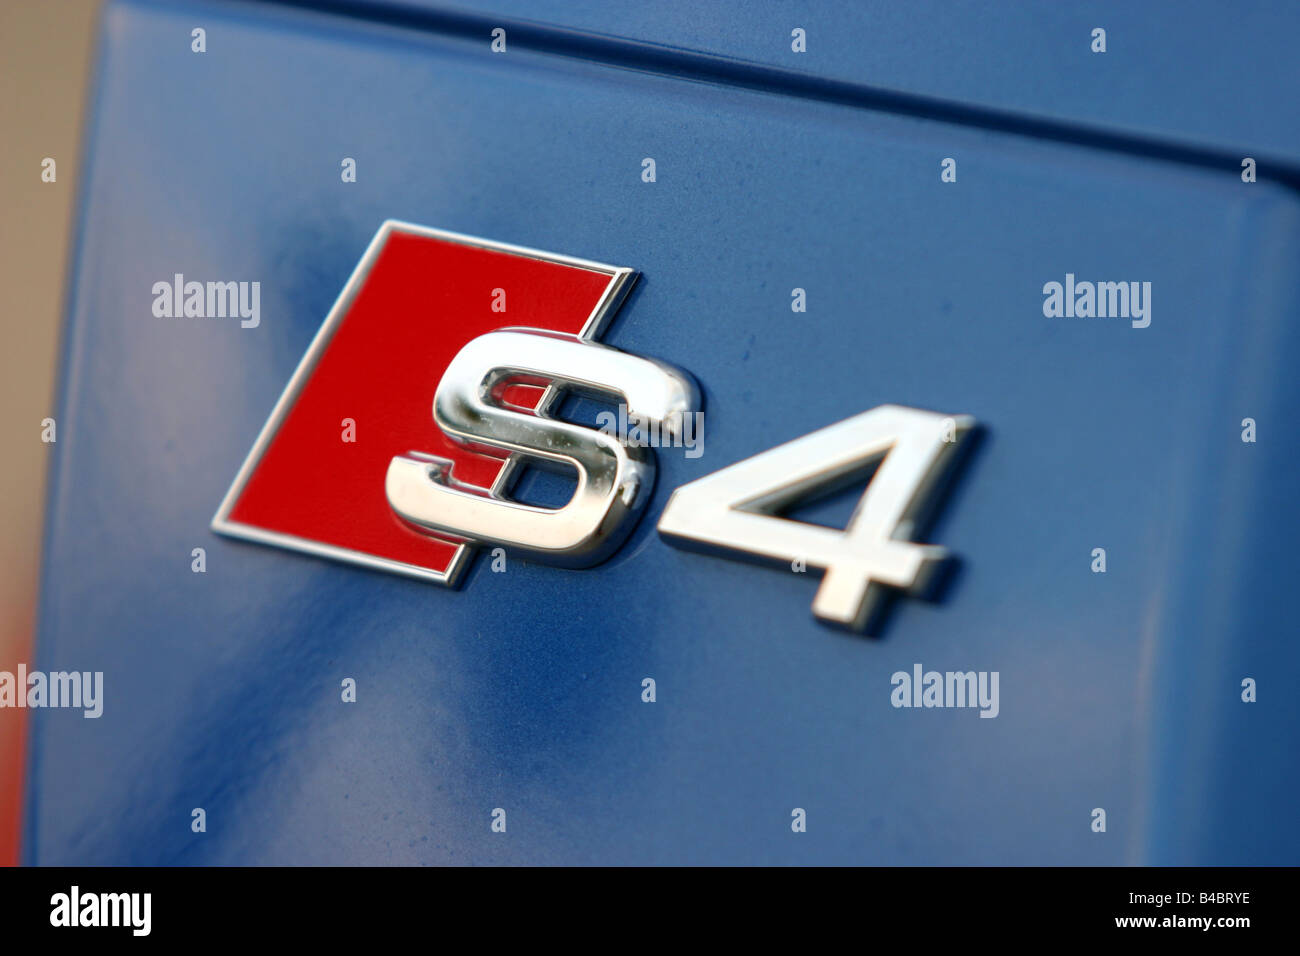 Auto, Audi S4 Cabrio, Modell Jahr 2003-blau, Detailansicht,  Modellbezeichnung, Technik/Zubehör, Zubehör, Foto Stockfotografie - Alamy